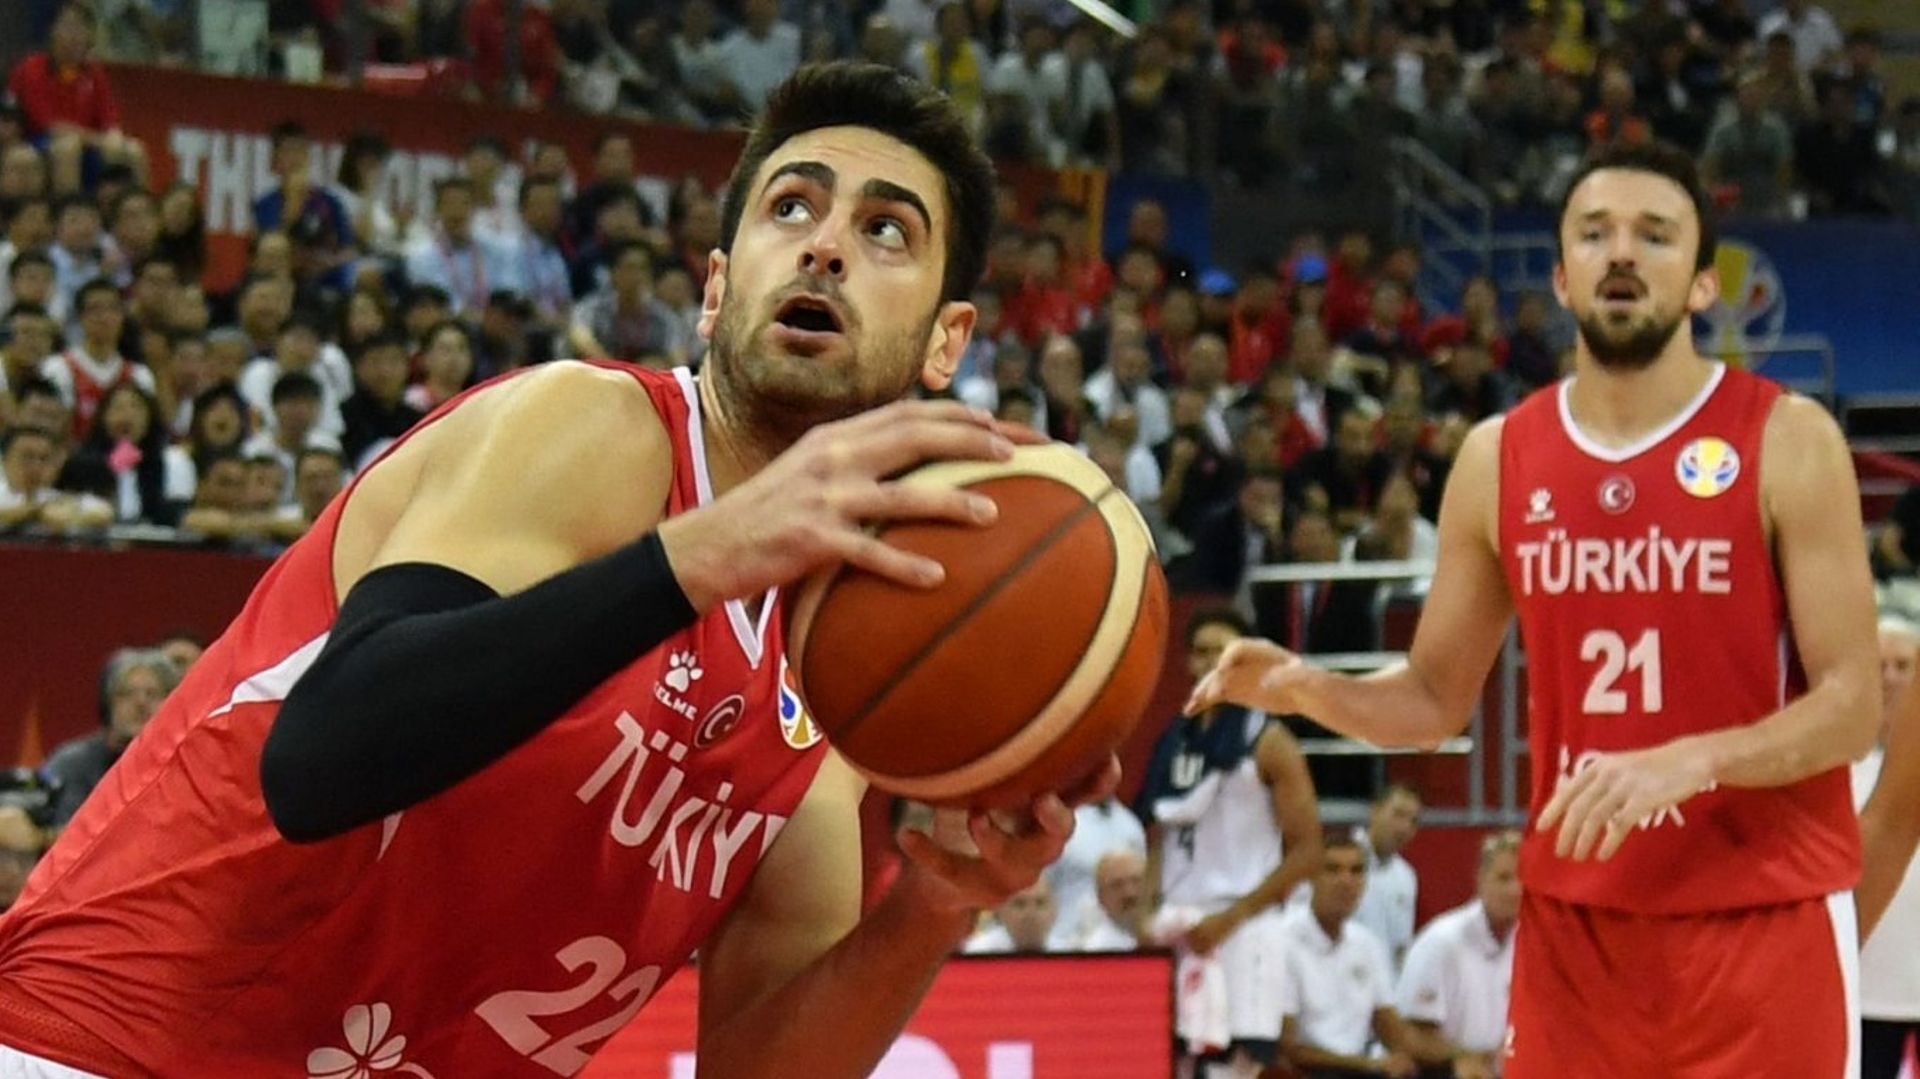 Basket : Le joueur turc Furkan Korkmaz. La sélection turque a menacé de quitter l'Eurobasket 2022, accusant la police géorgienne d'avoir agressé son ailier NBA dans les couloirs de la salle de Tbilissi où la Turquie s'est inclinée contre la Géorgie (88-83